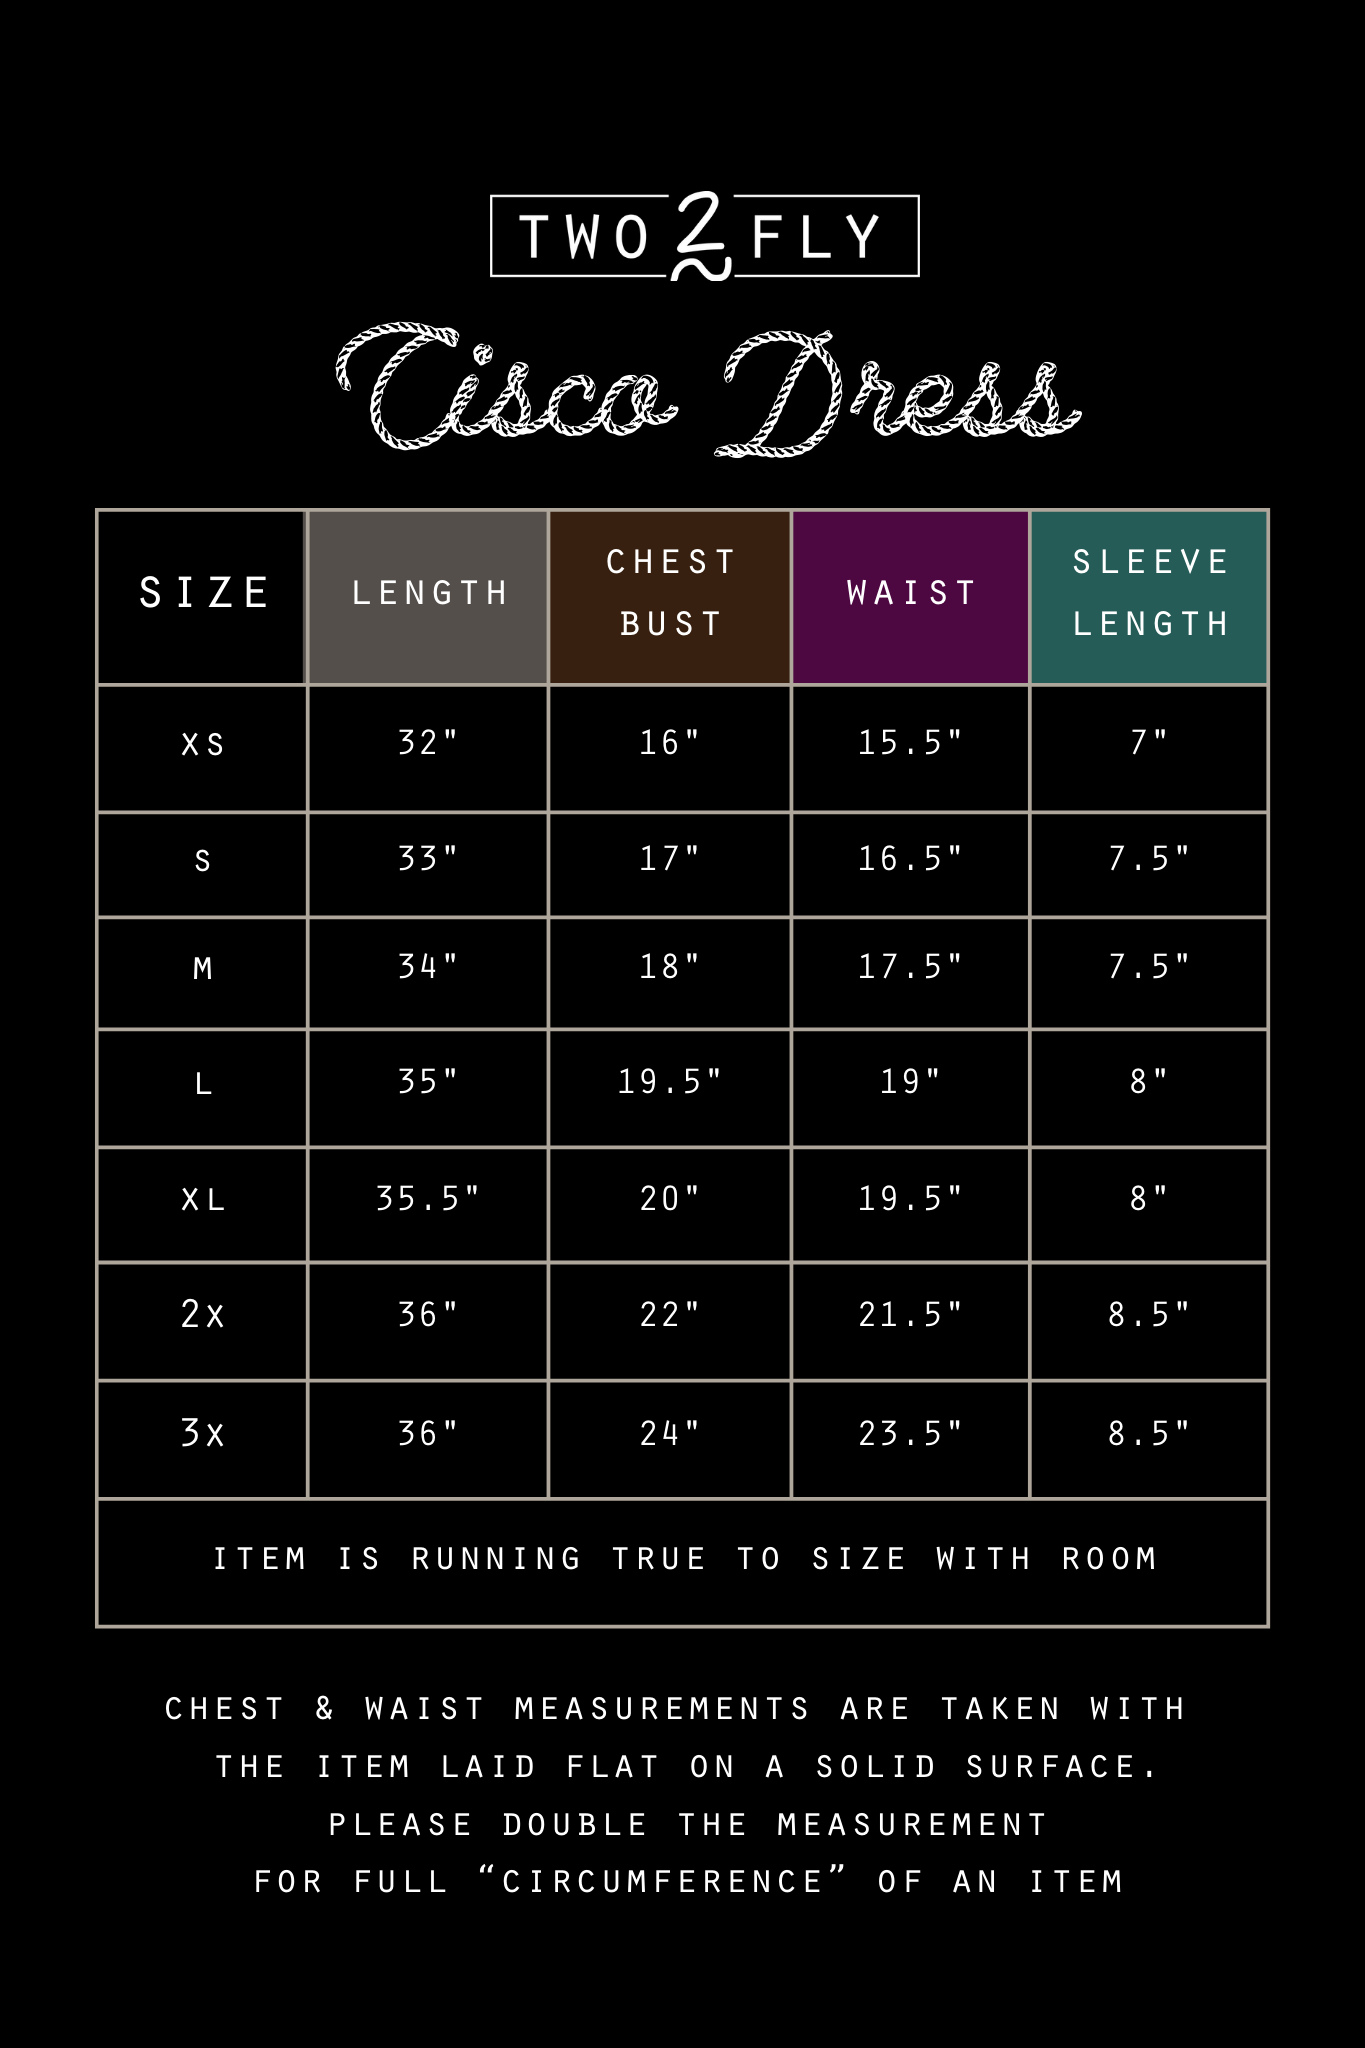 CISCO DRESS